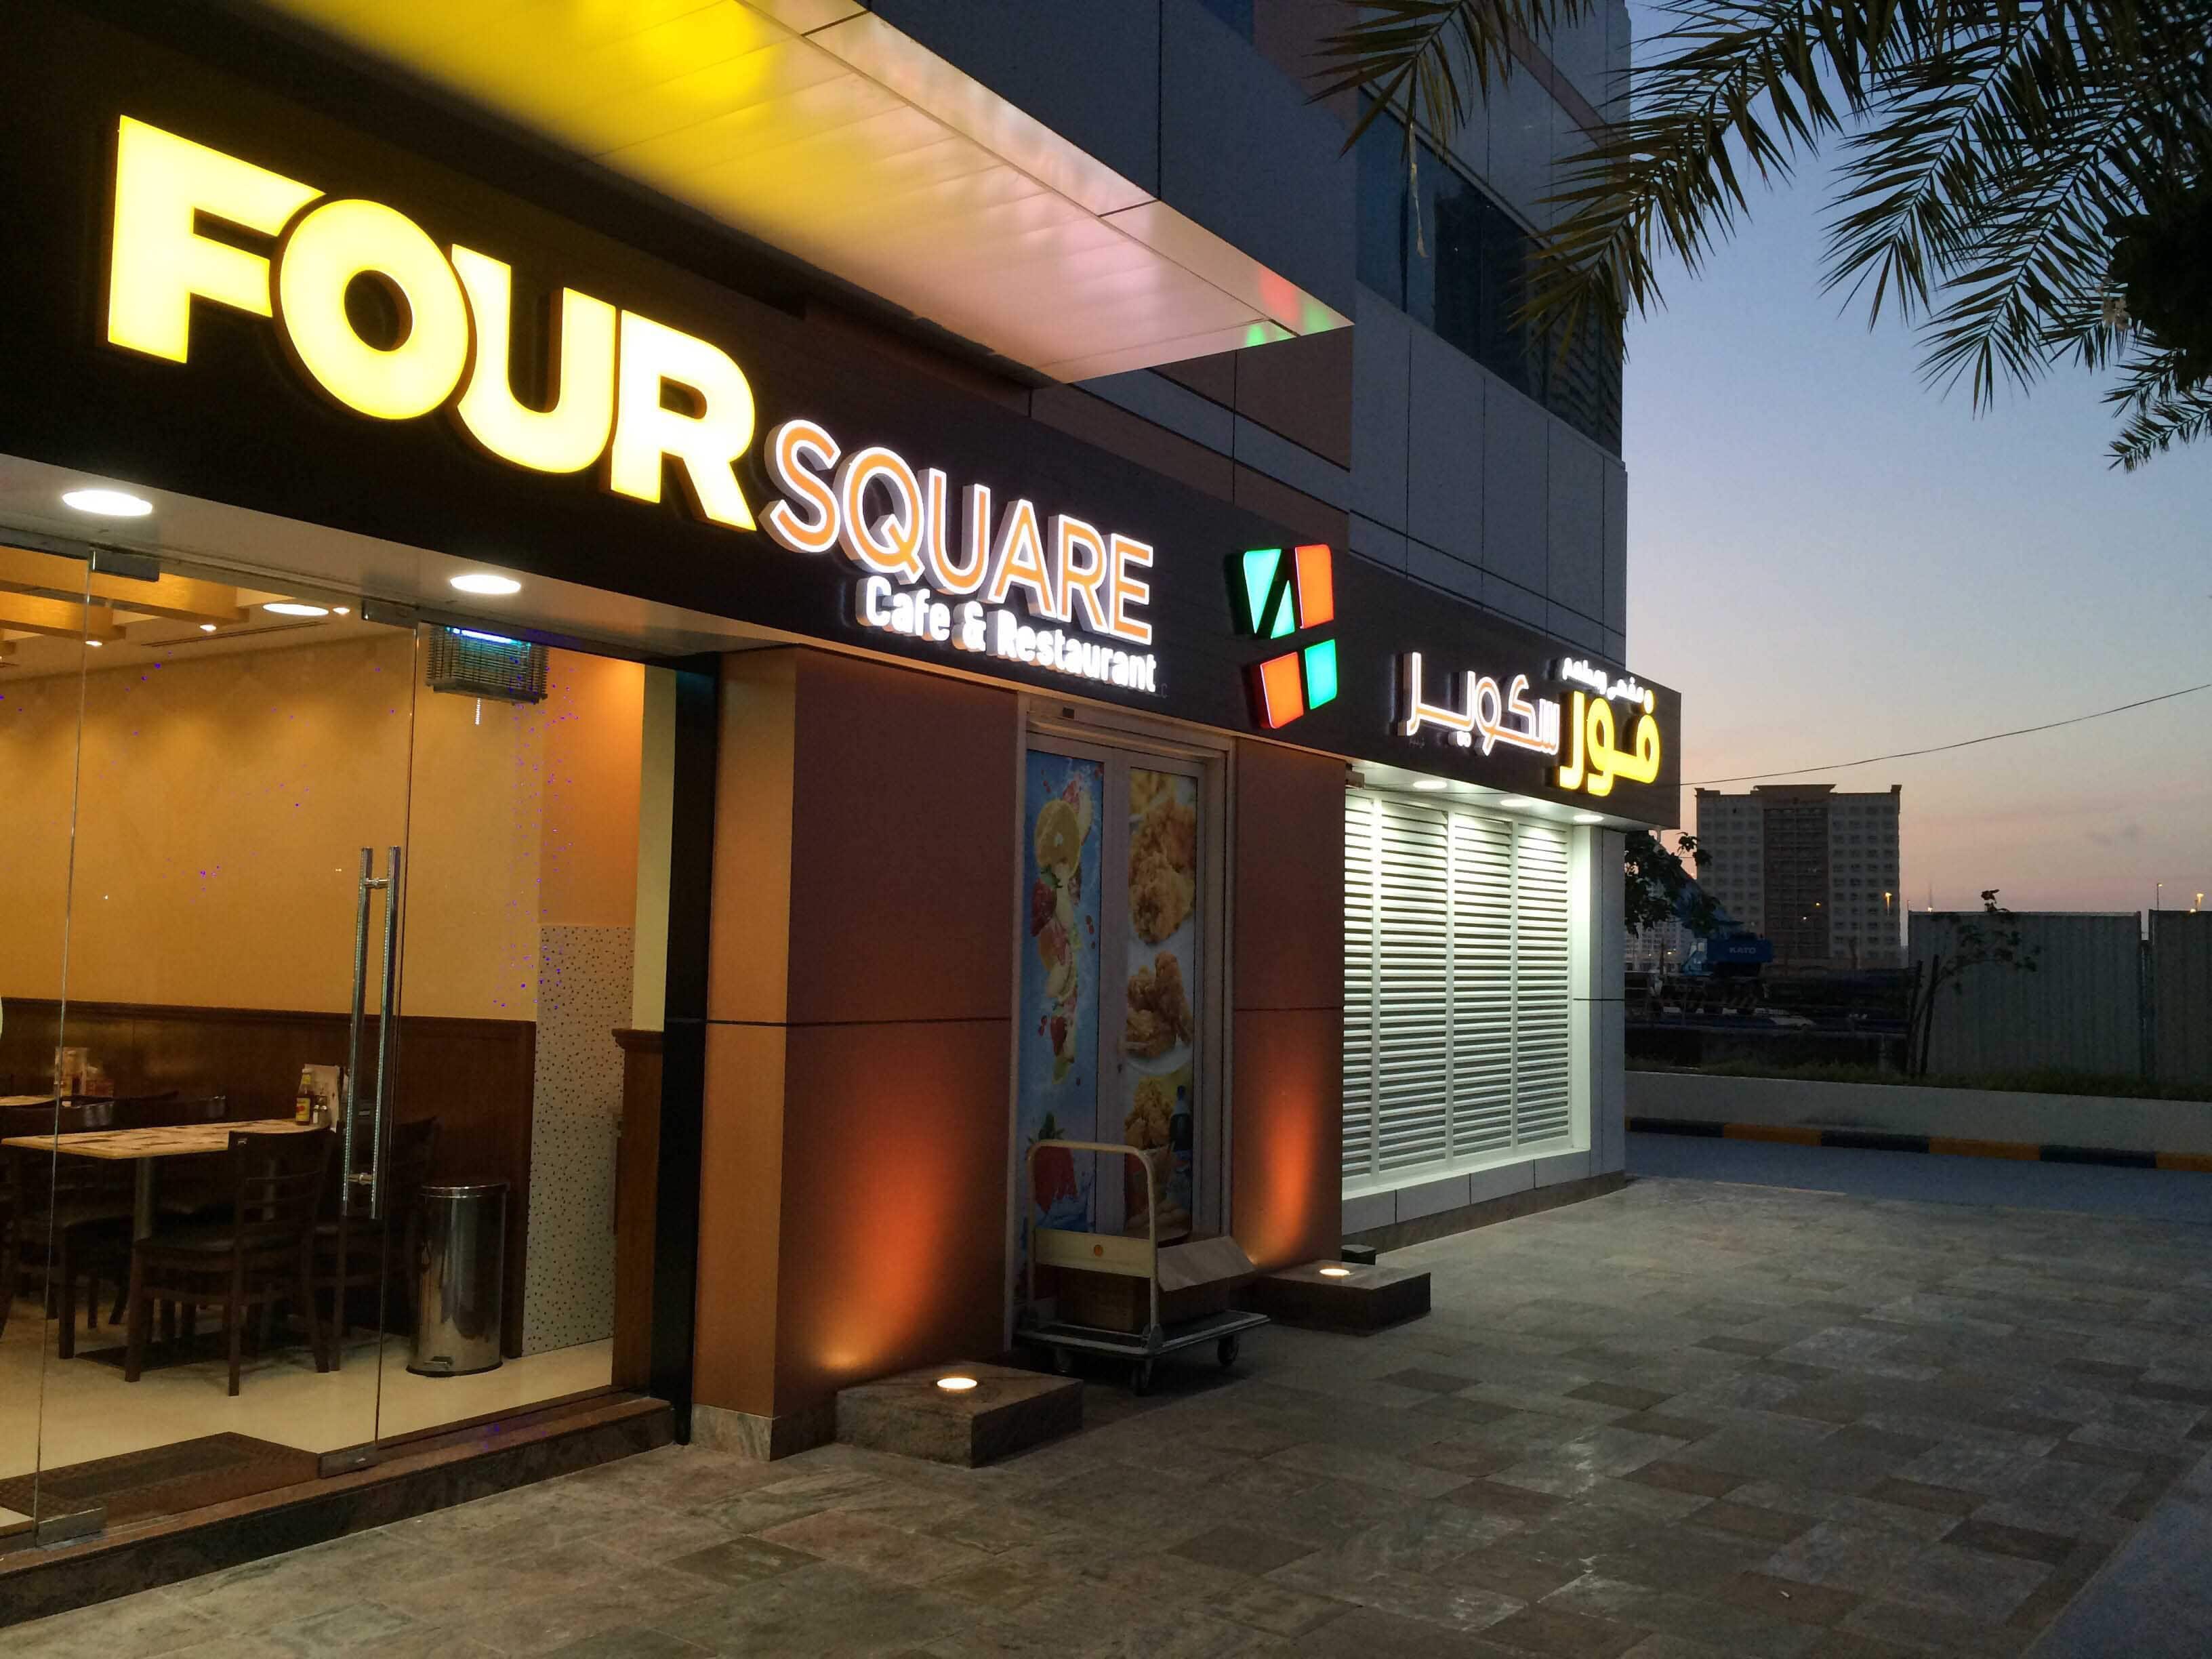 Four Square Cafe & Restaurant